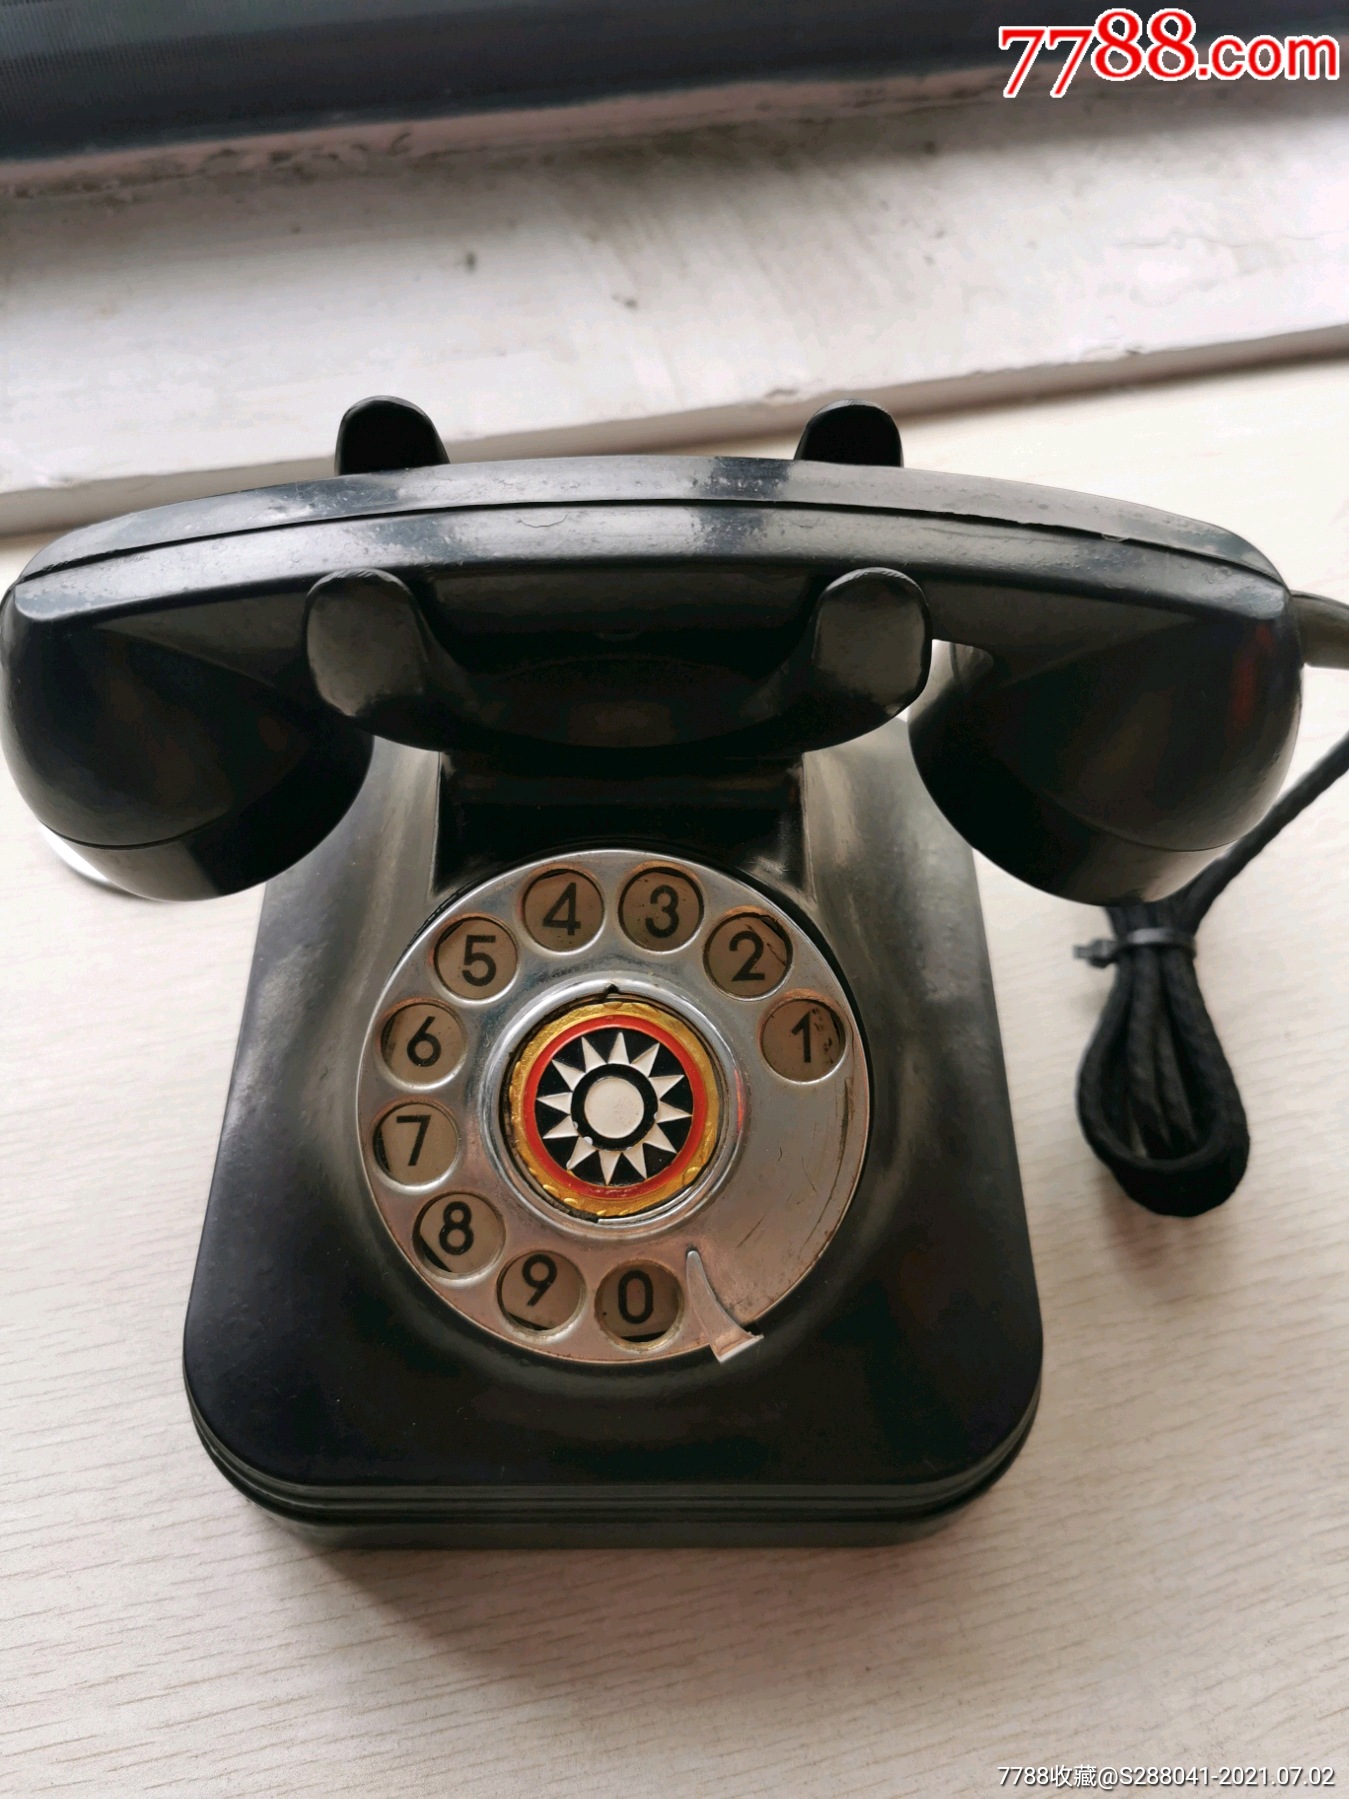 七八十年代老拨号电话机收藏品一线农村民俗老物件古玩古董摆件